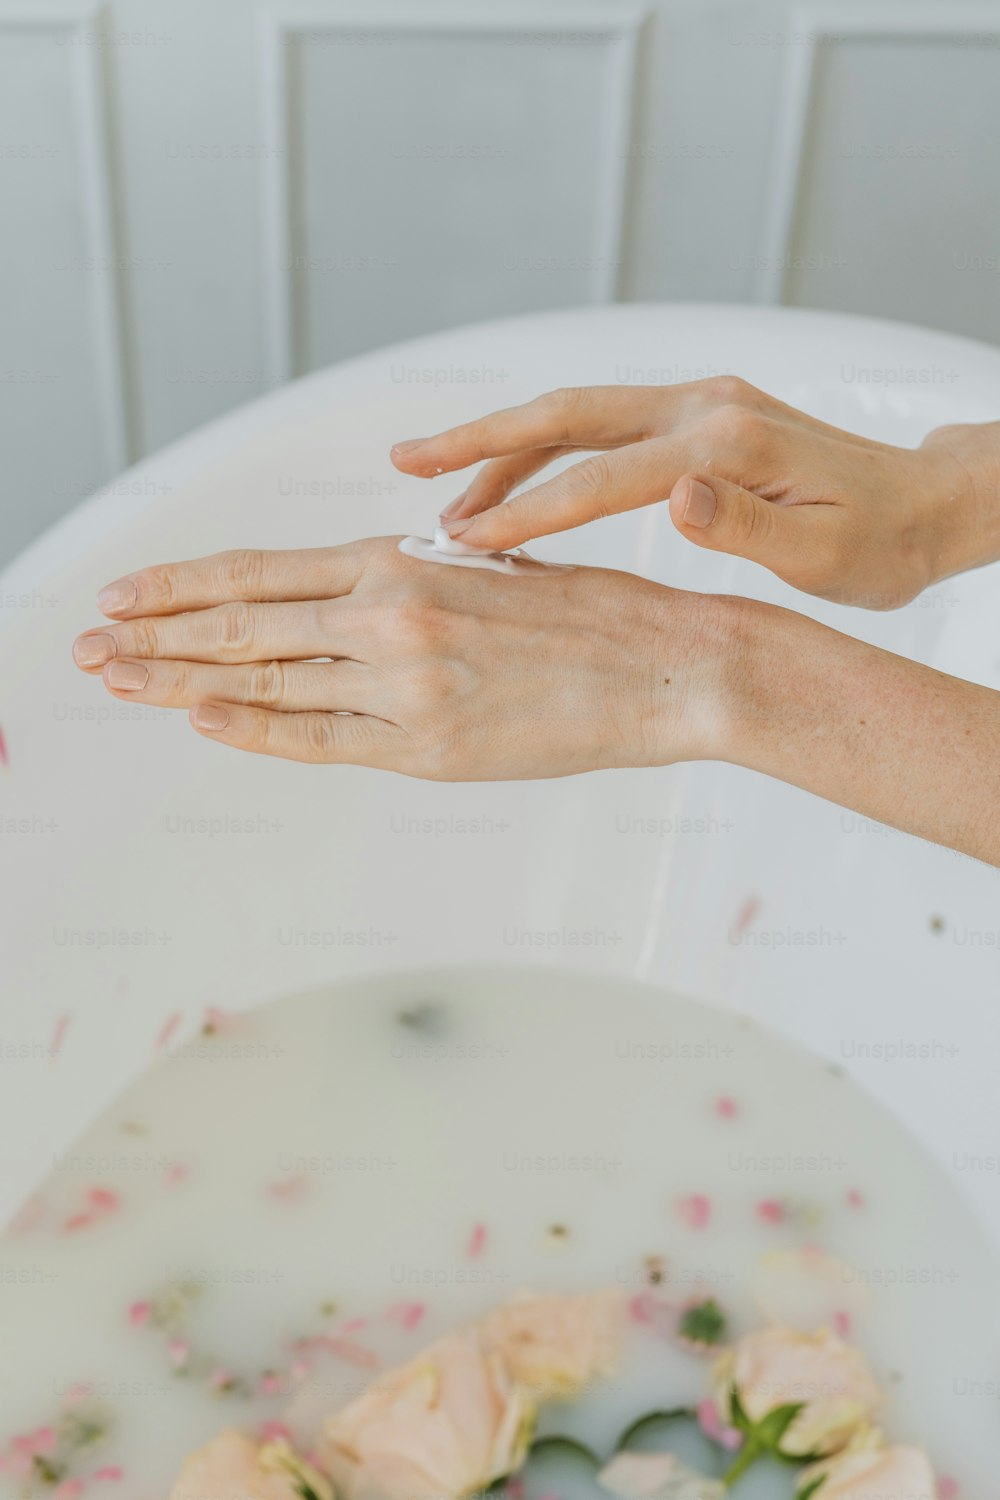 女性の手が石鹸で手を洗っている